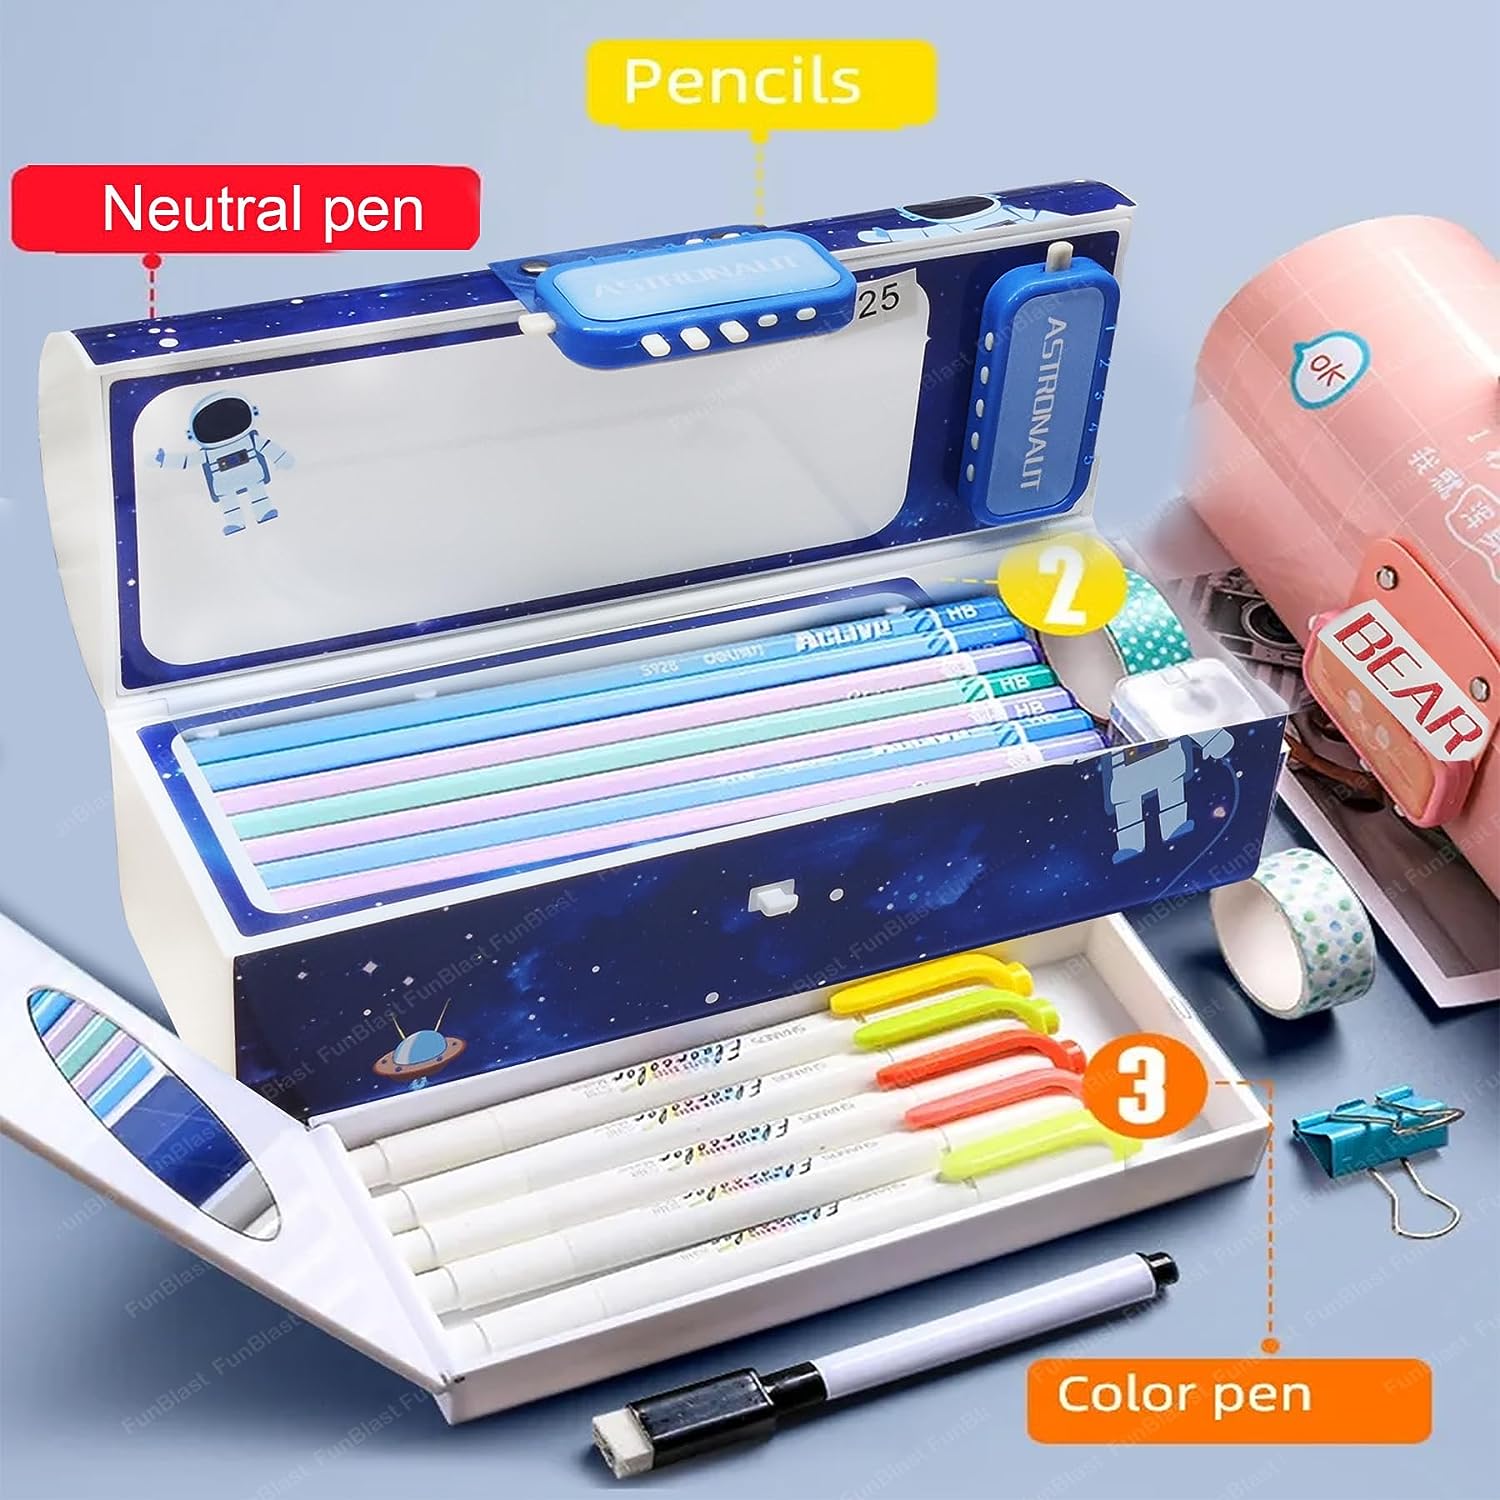 FunBlast Pencil Pouch for Kids - Pencil Box for Boys, Pen & Pencil